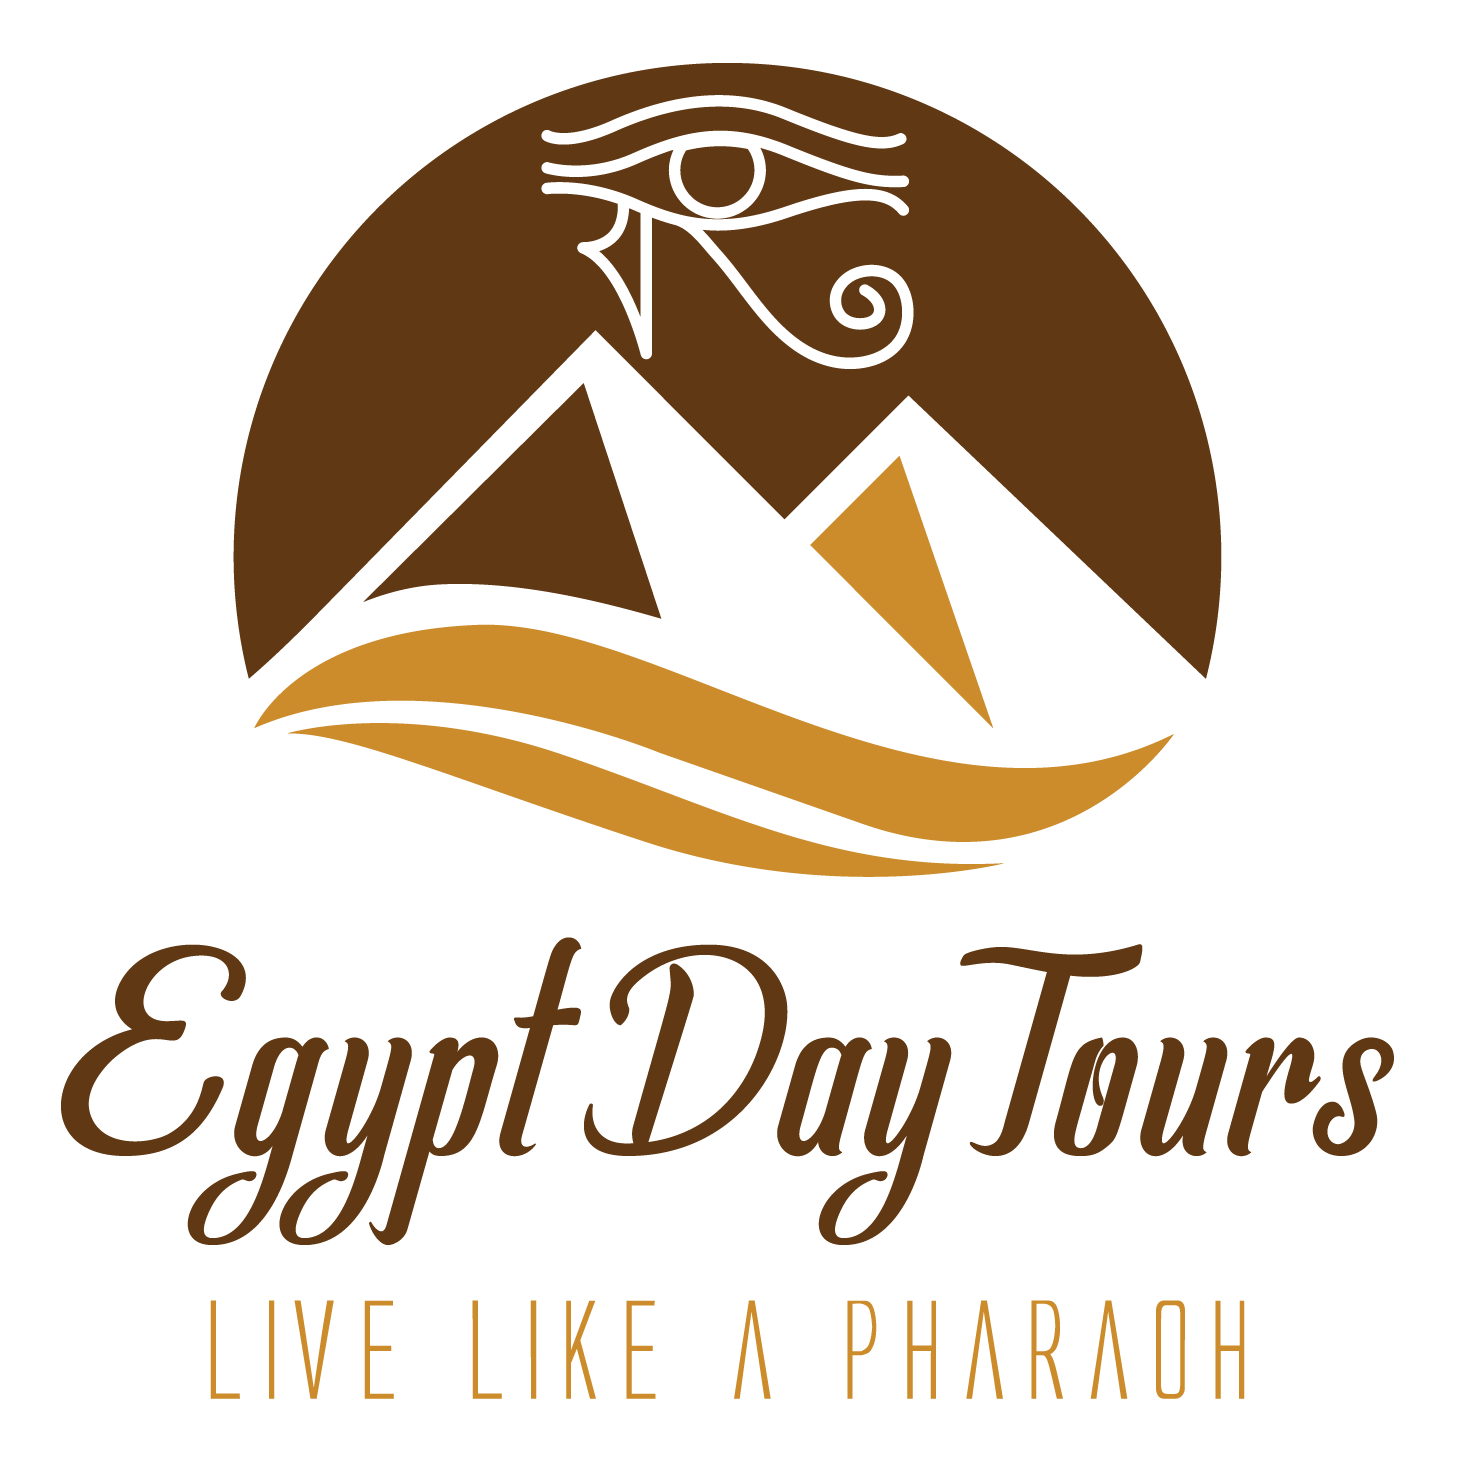 Egypt Day Tours | Cairo Day Tour from Alexandria, Cairo day tour, Cairo tours